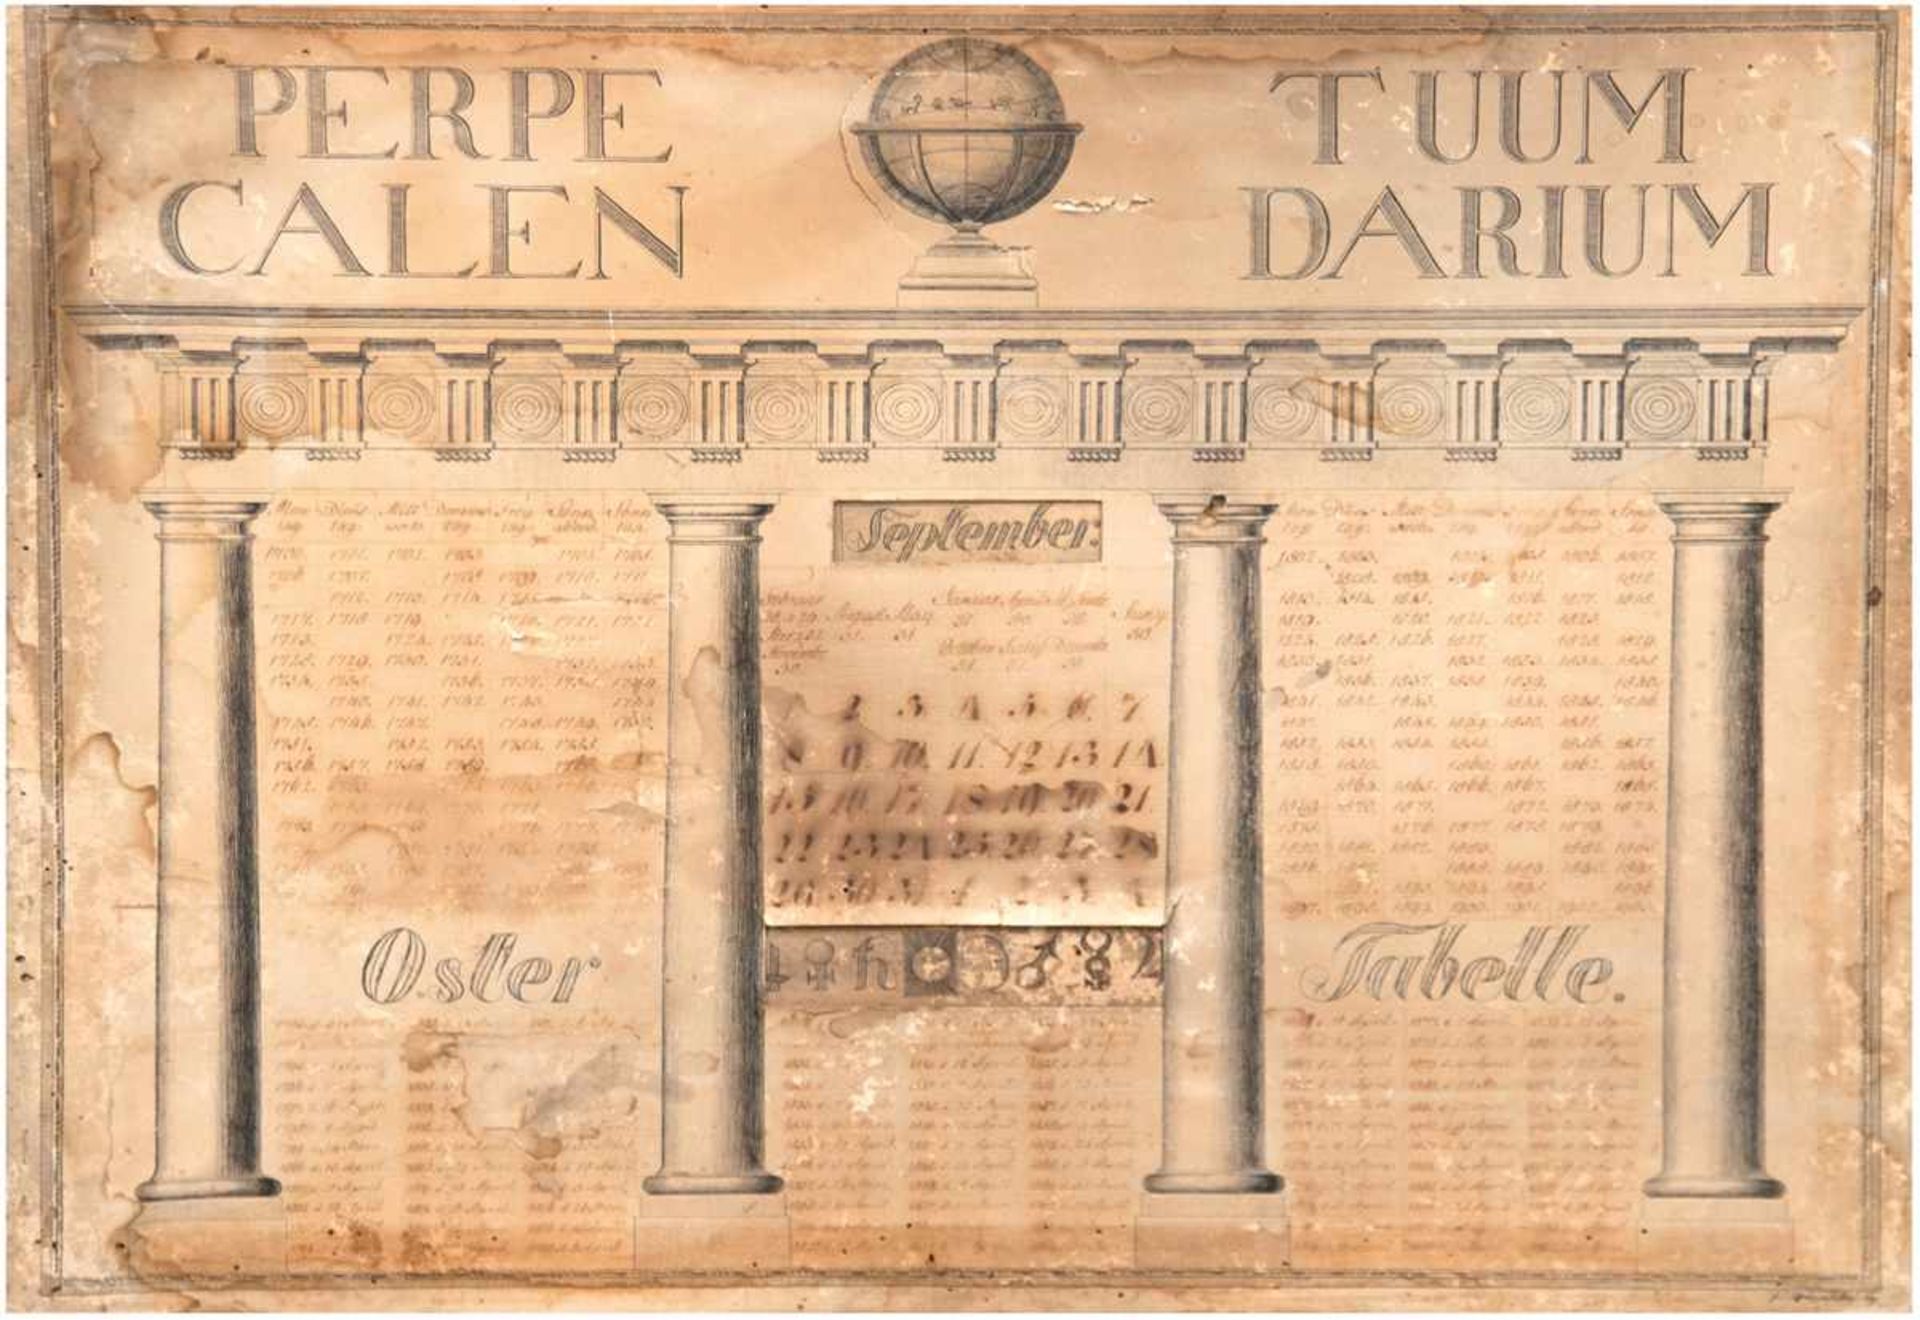 Kalender, 1700-1900, Papier auf Holz, gestochene Architektur mit Säulen und Fries, bekröntvon